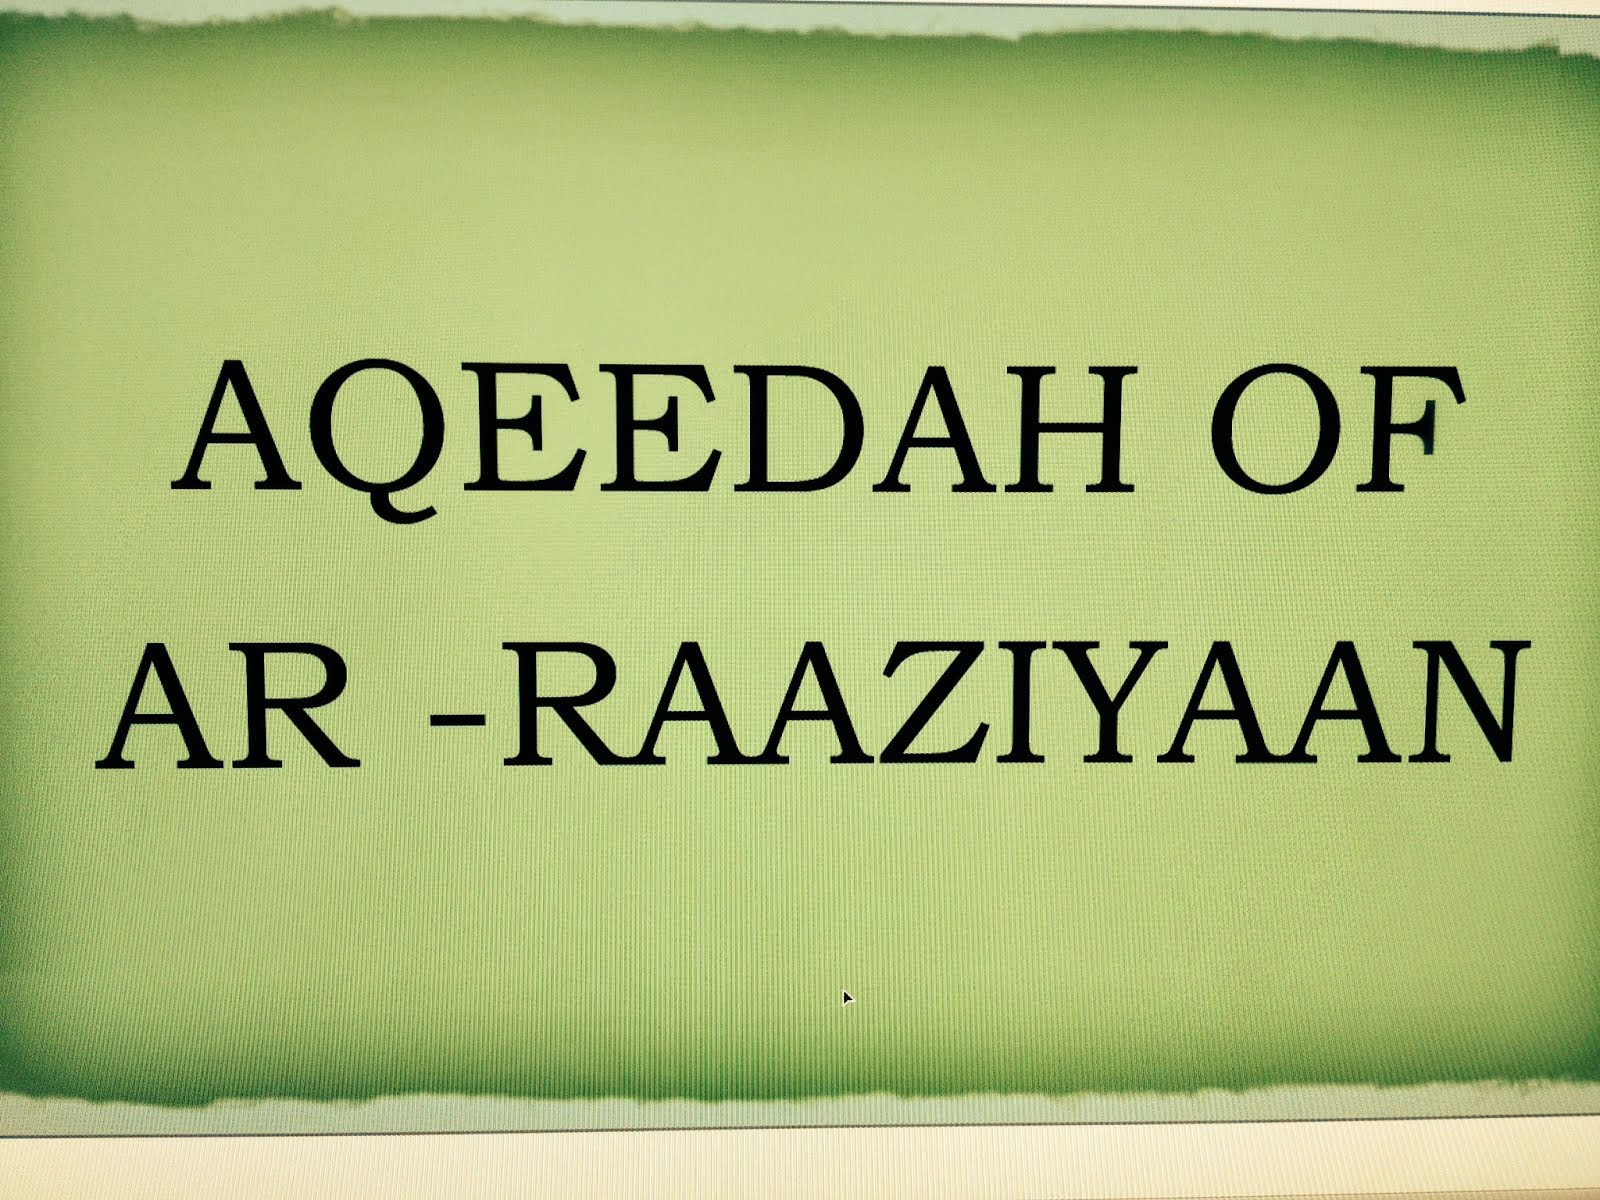 THE 'AQEEDAH OF AR-RAAZIYYAAN